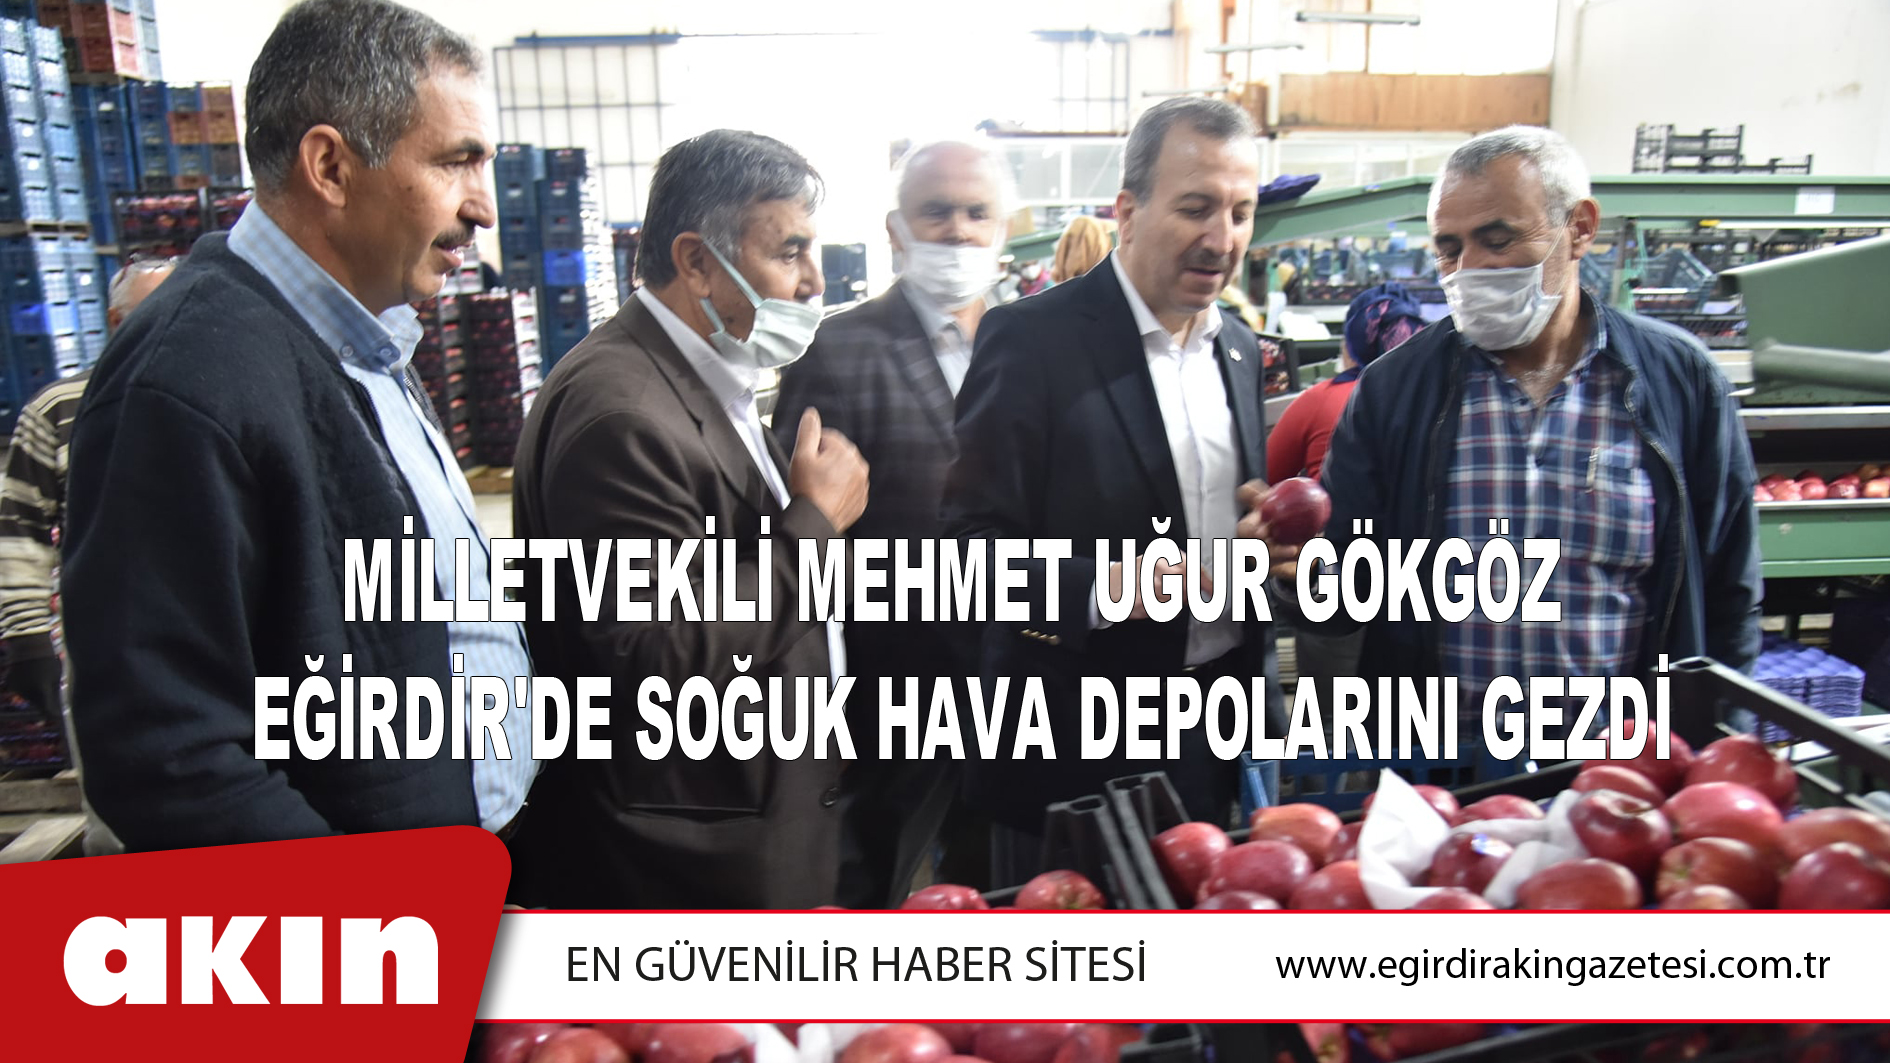 Milletvekili Mehmet Uğur Gökgöz, Eğirdir'de Soğuk Hava Depolarını Gezdi